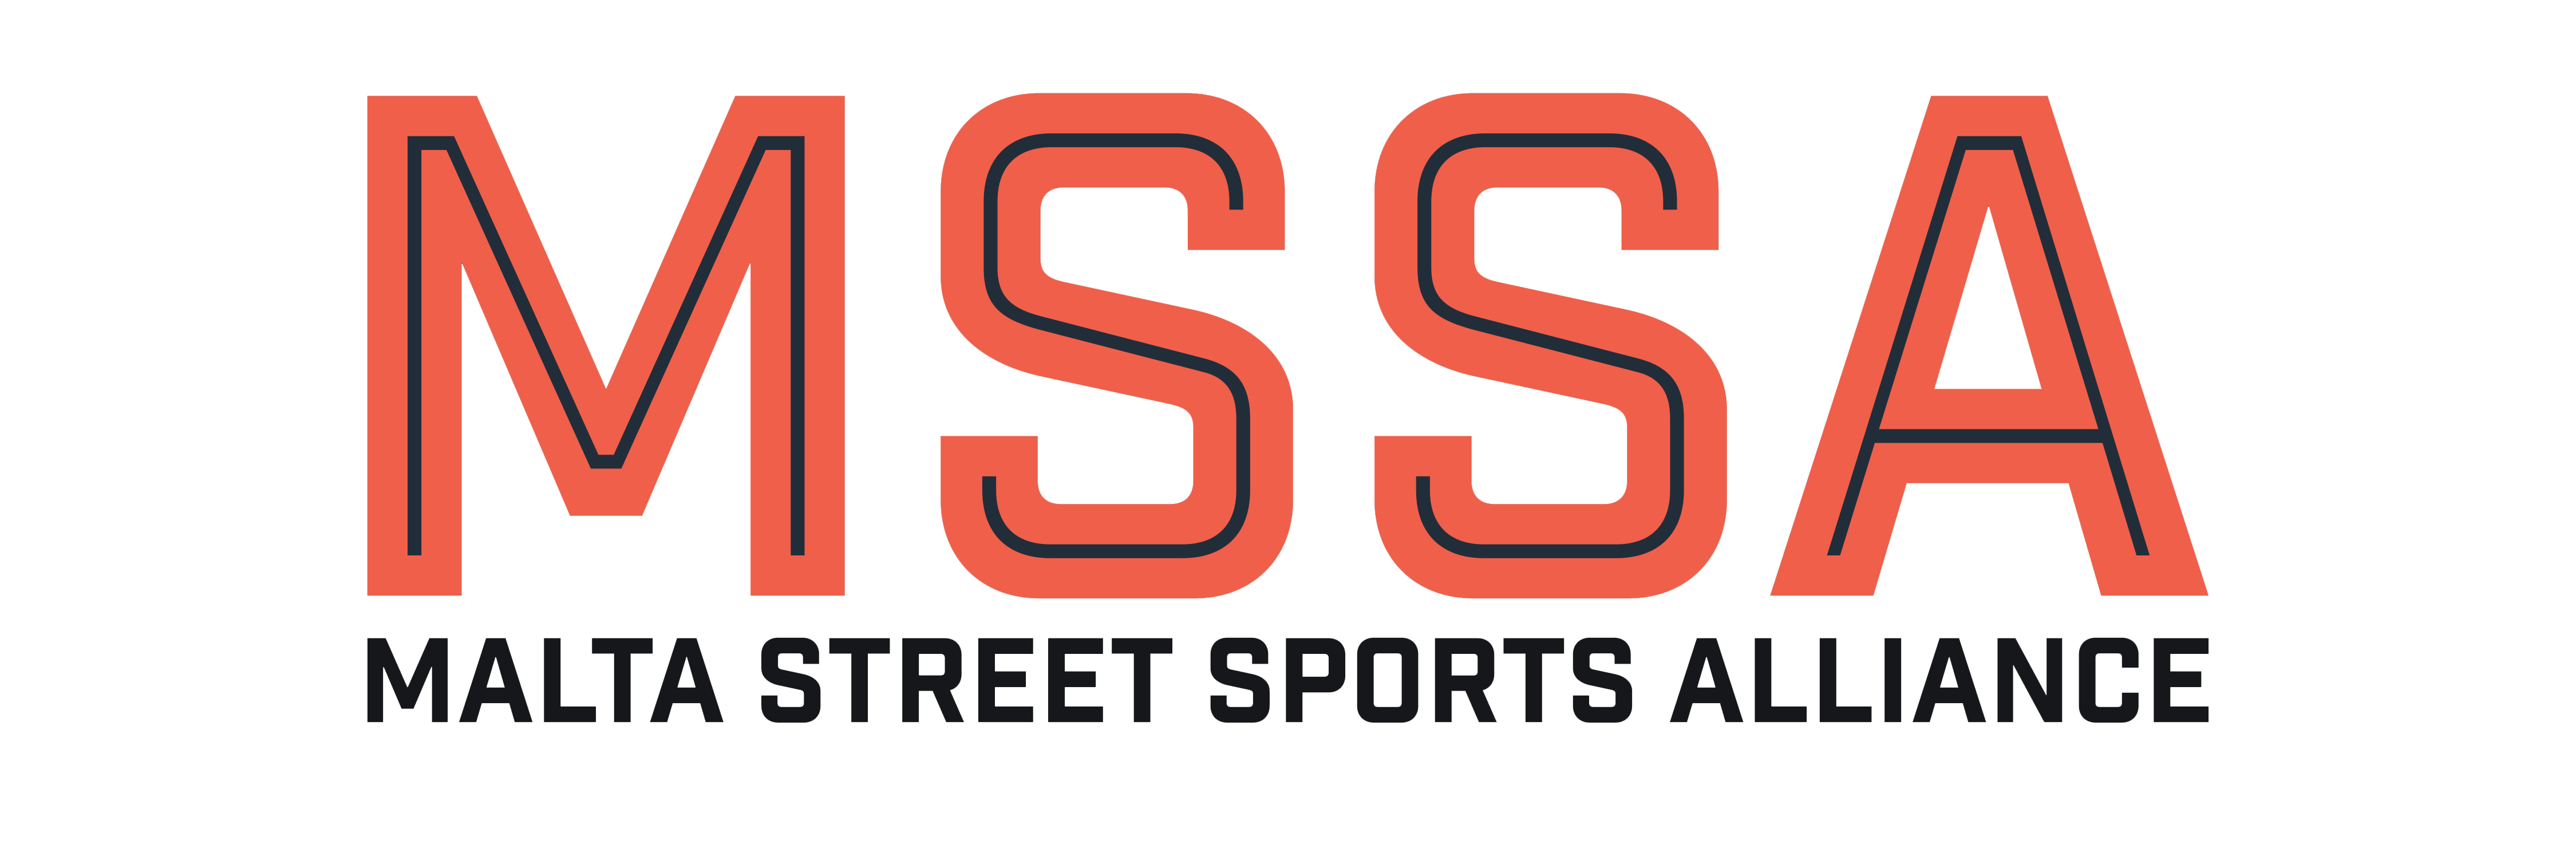 Malta Street Sport Alliance